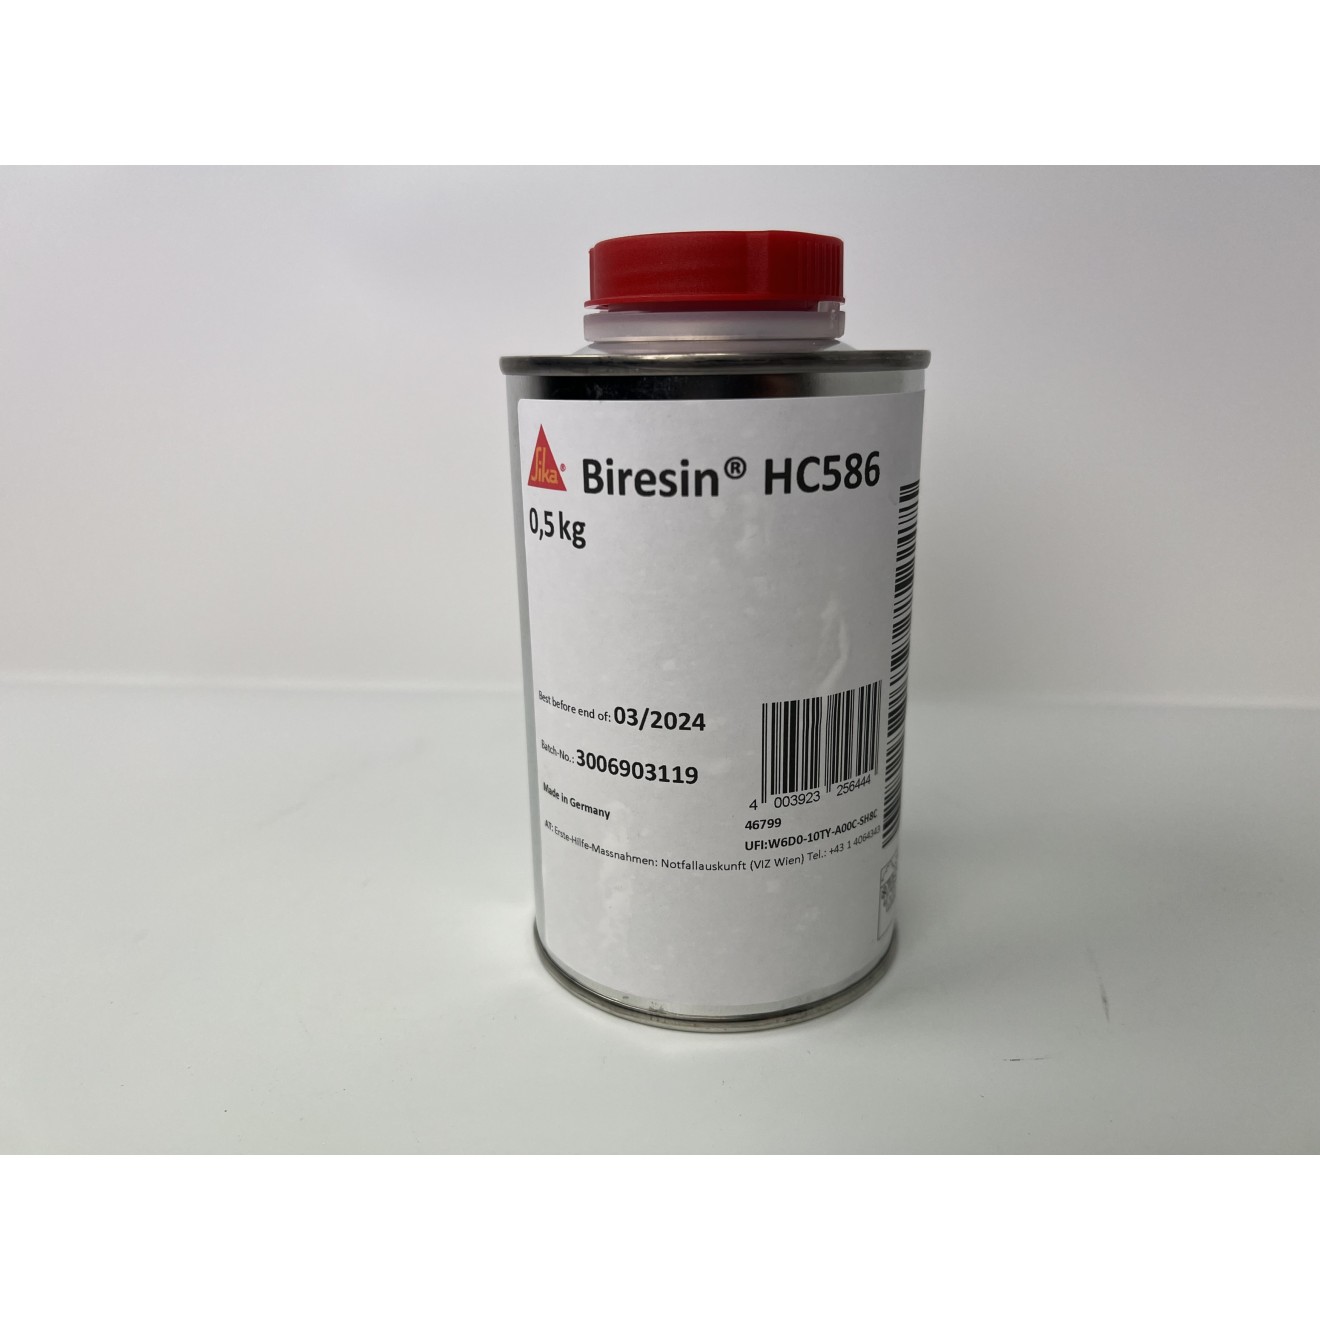 Biresin HC586 (C) Beschleuniger, 0,5kg